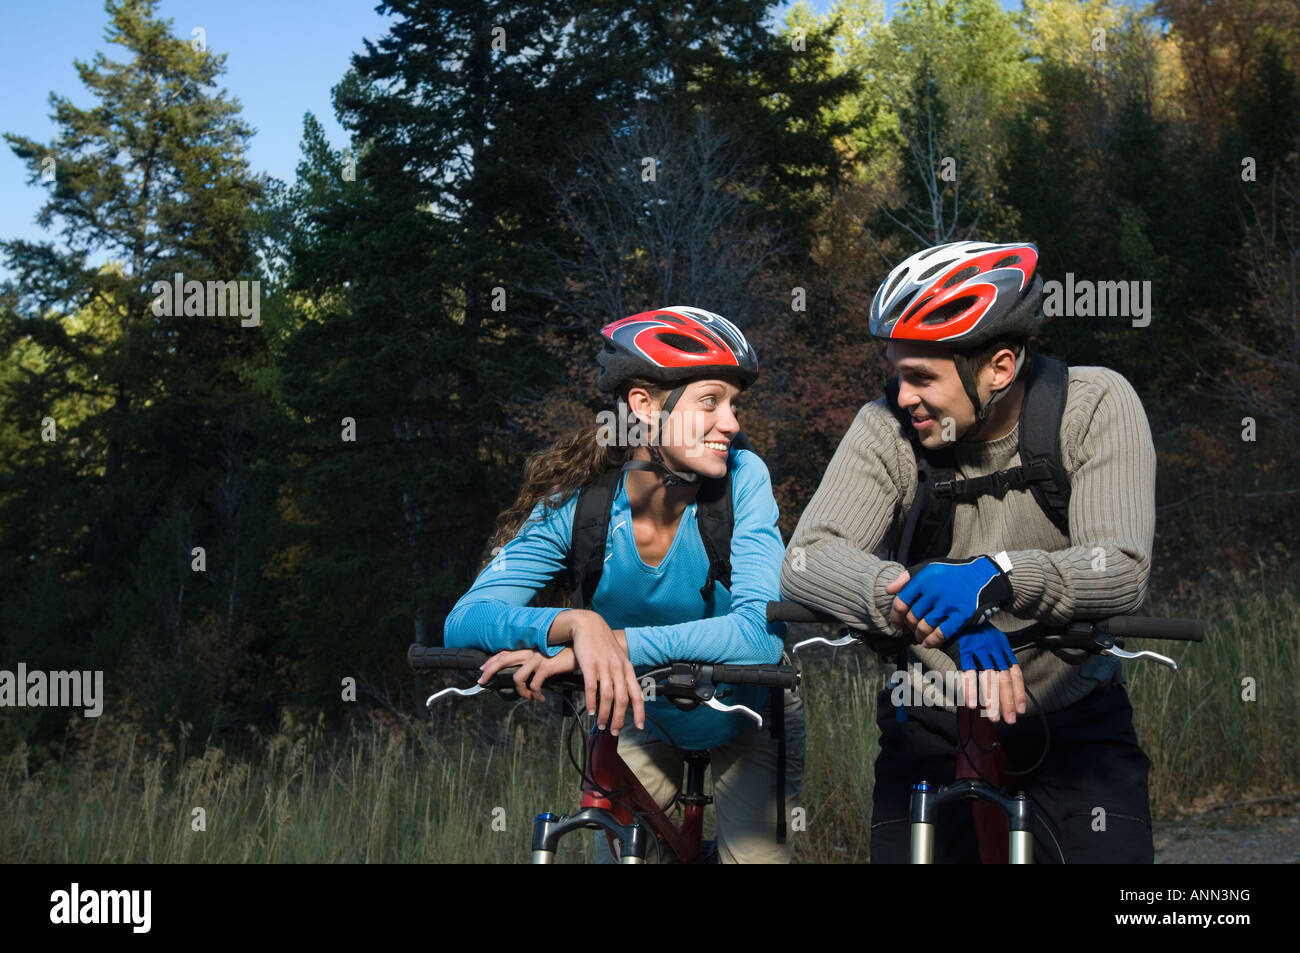 Couple on mountain bikes, Utah, United States Stock Photo